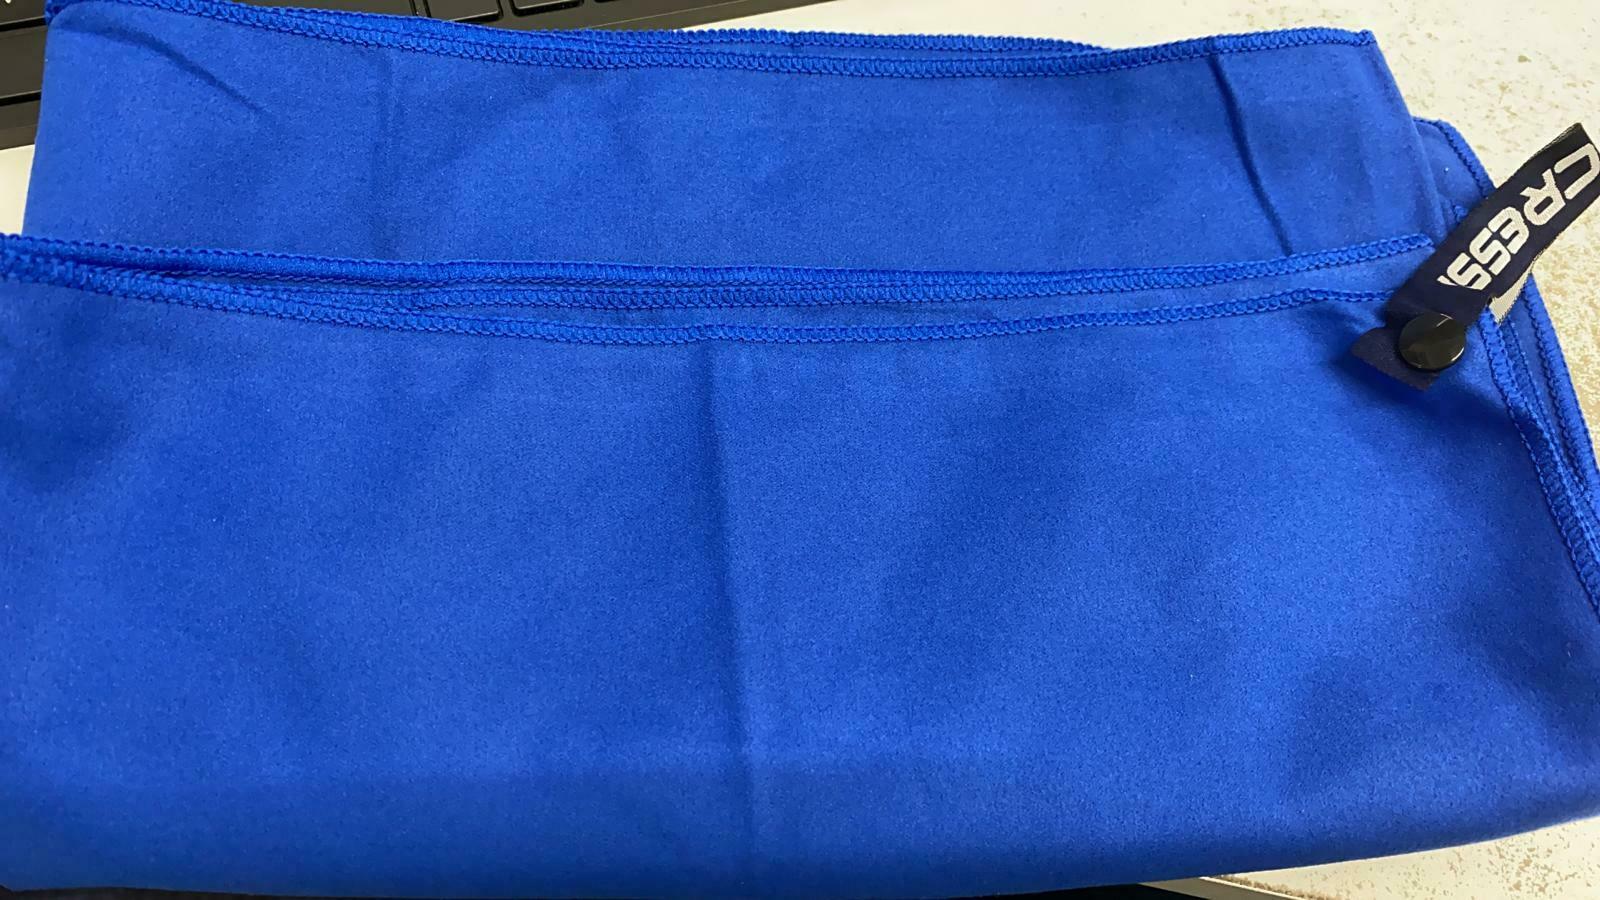 Cressi 120cm Microfibre Towel- Blue-46&quot; x 23&quot; - New- 3008